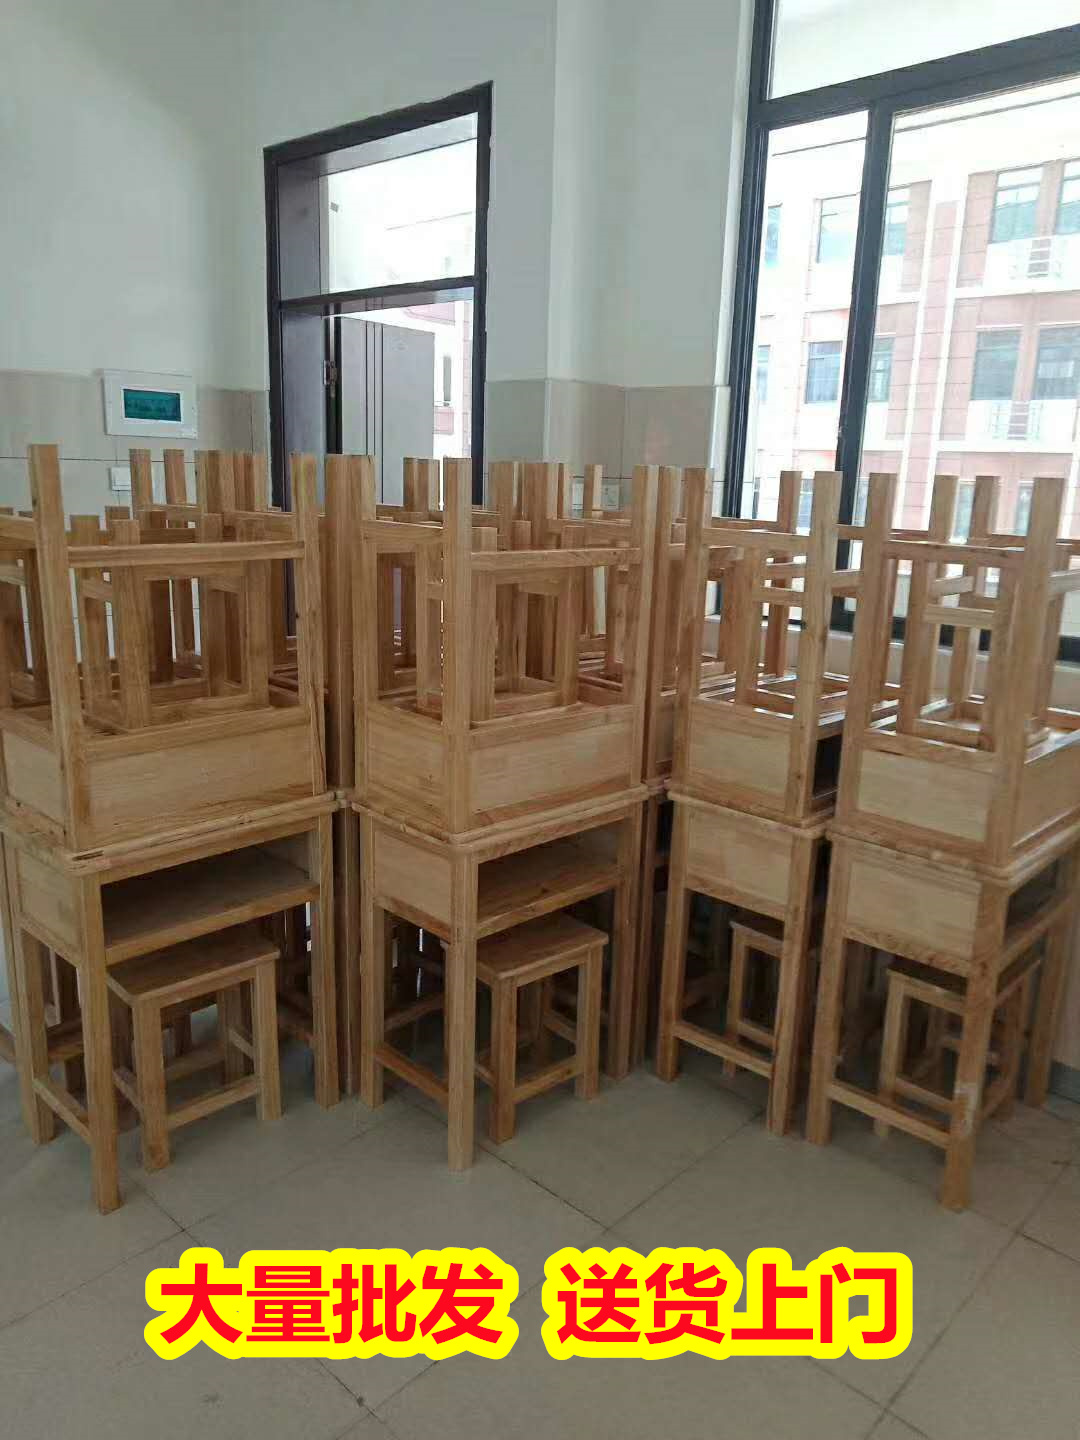 批发供应崇左龙州单人课桌椅价格,实木单人课桌椅